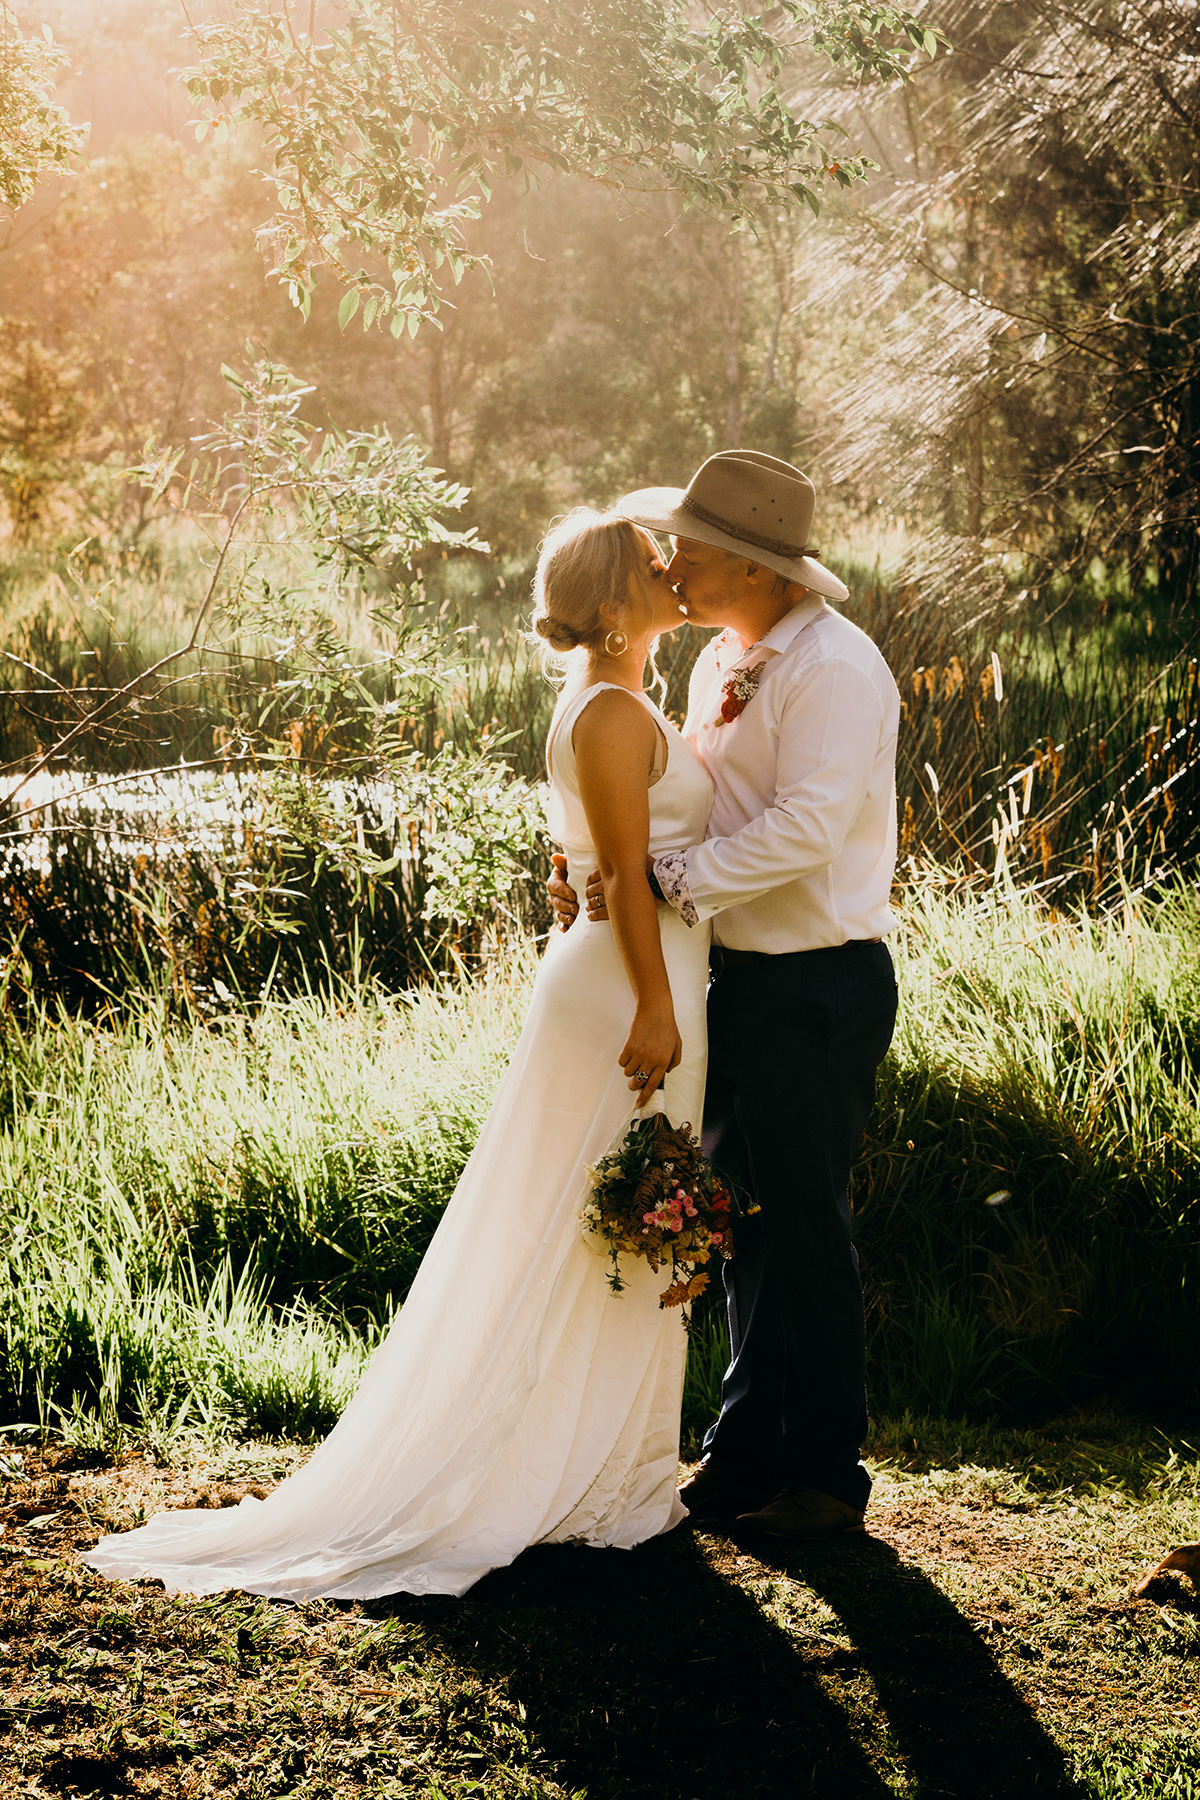 Weddding at The Gap NSW by Byron Bay Wedding Celebrant